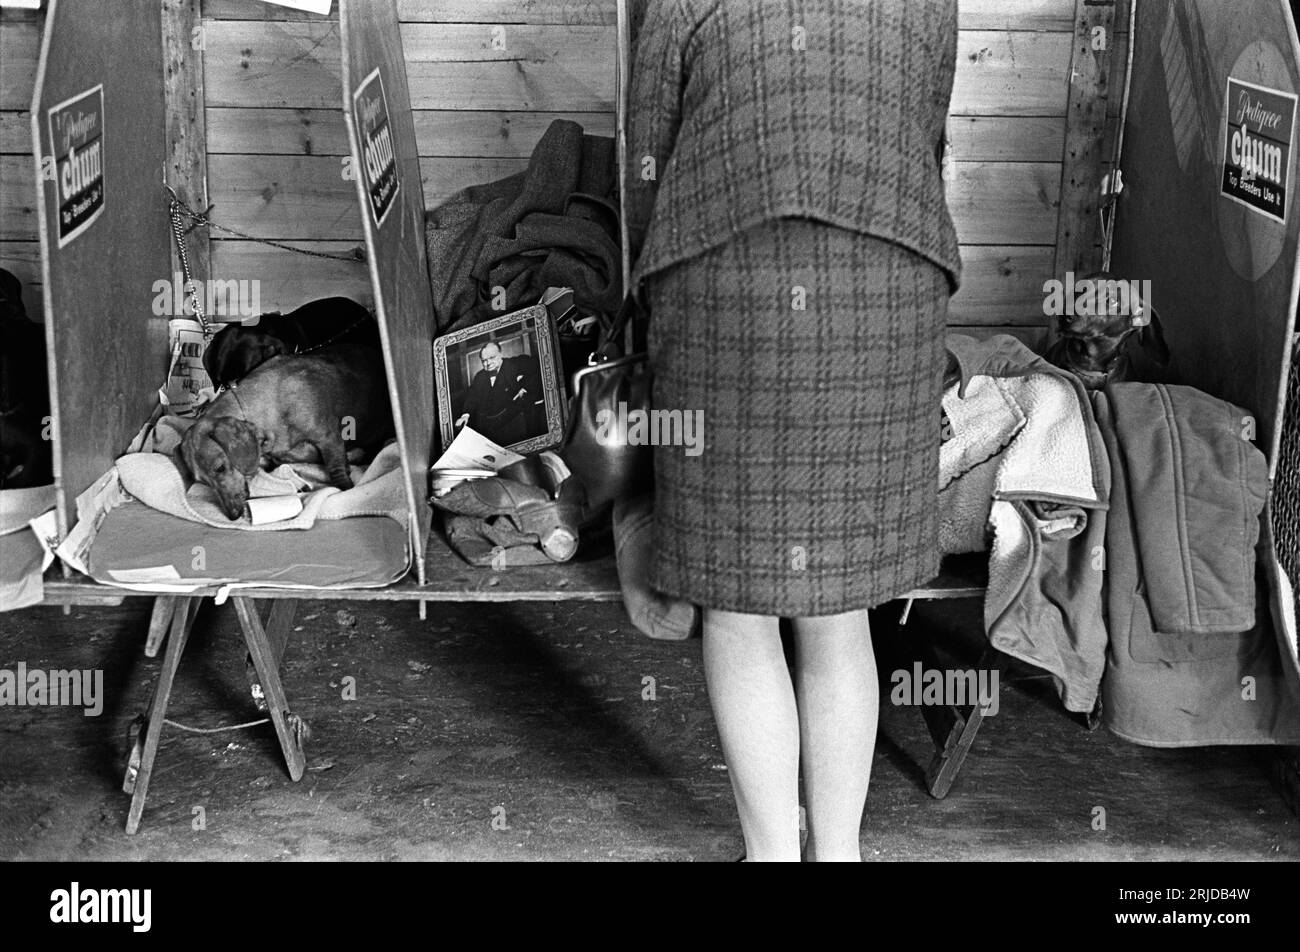 1960s Earls Court, Londra, Crufts Dog Show al centro espositivo Olympia, una donna che mostra i suoi Dachshunds, il suo sonno nel suo compartimento. Un'immagine di Winston Churchill su un coperchio della scatola di latta. Earls Court, Londra, Inghilterra, febbraio 1968. HOMER SYKES. Foto Stock